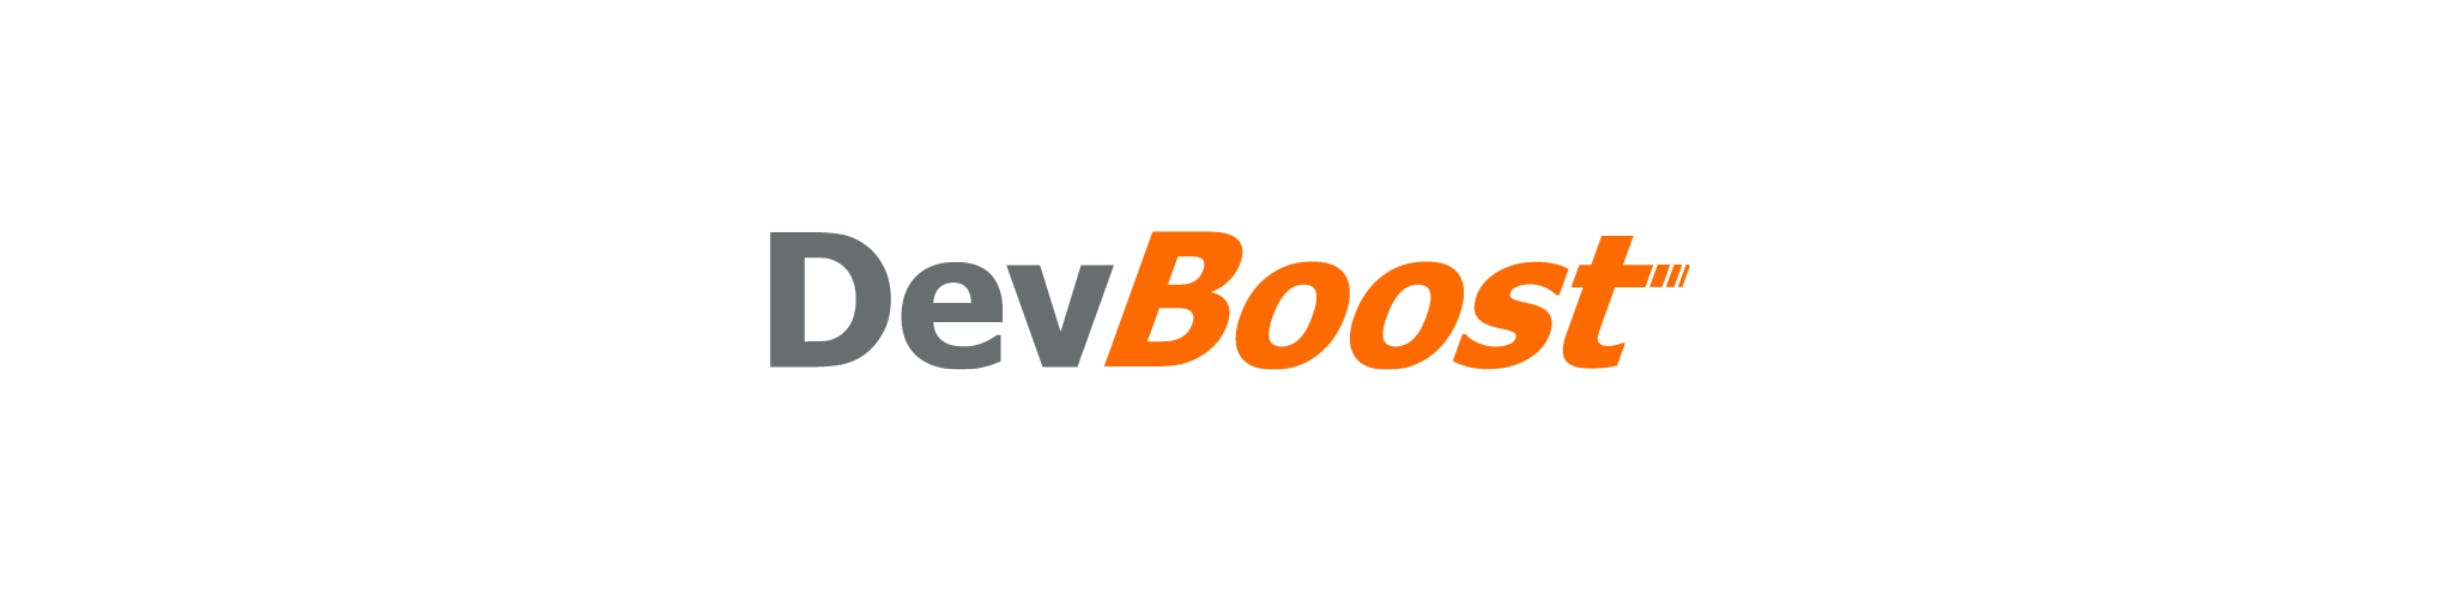 DevBoost Logo Generation 2